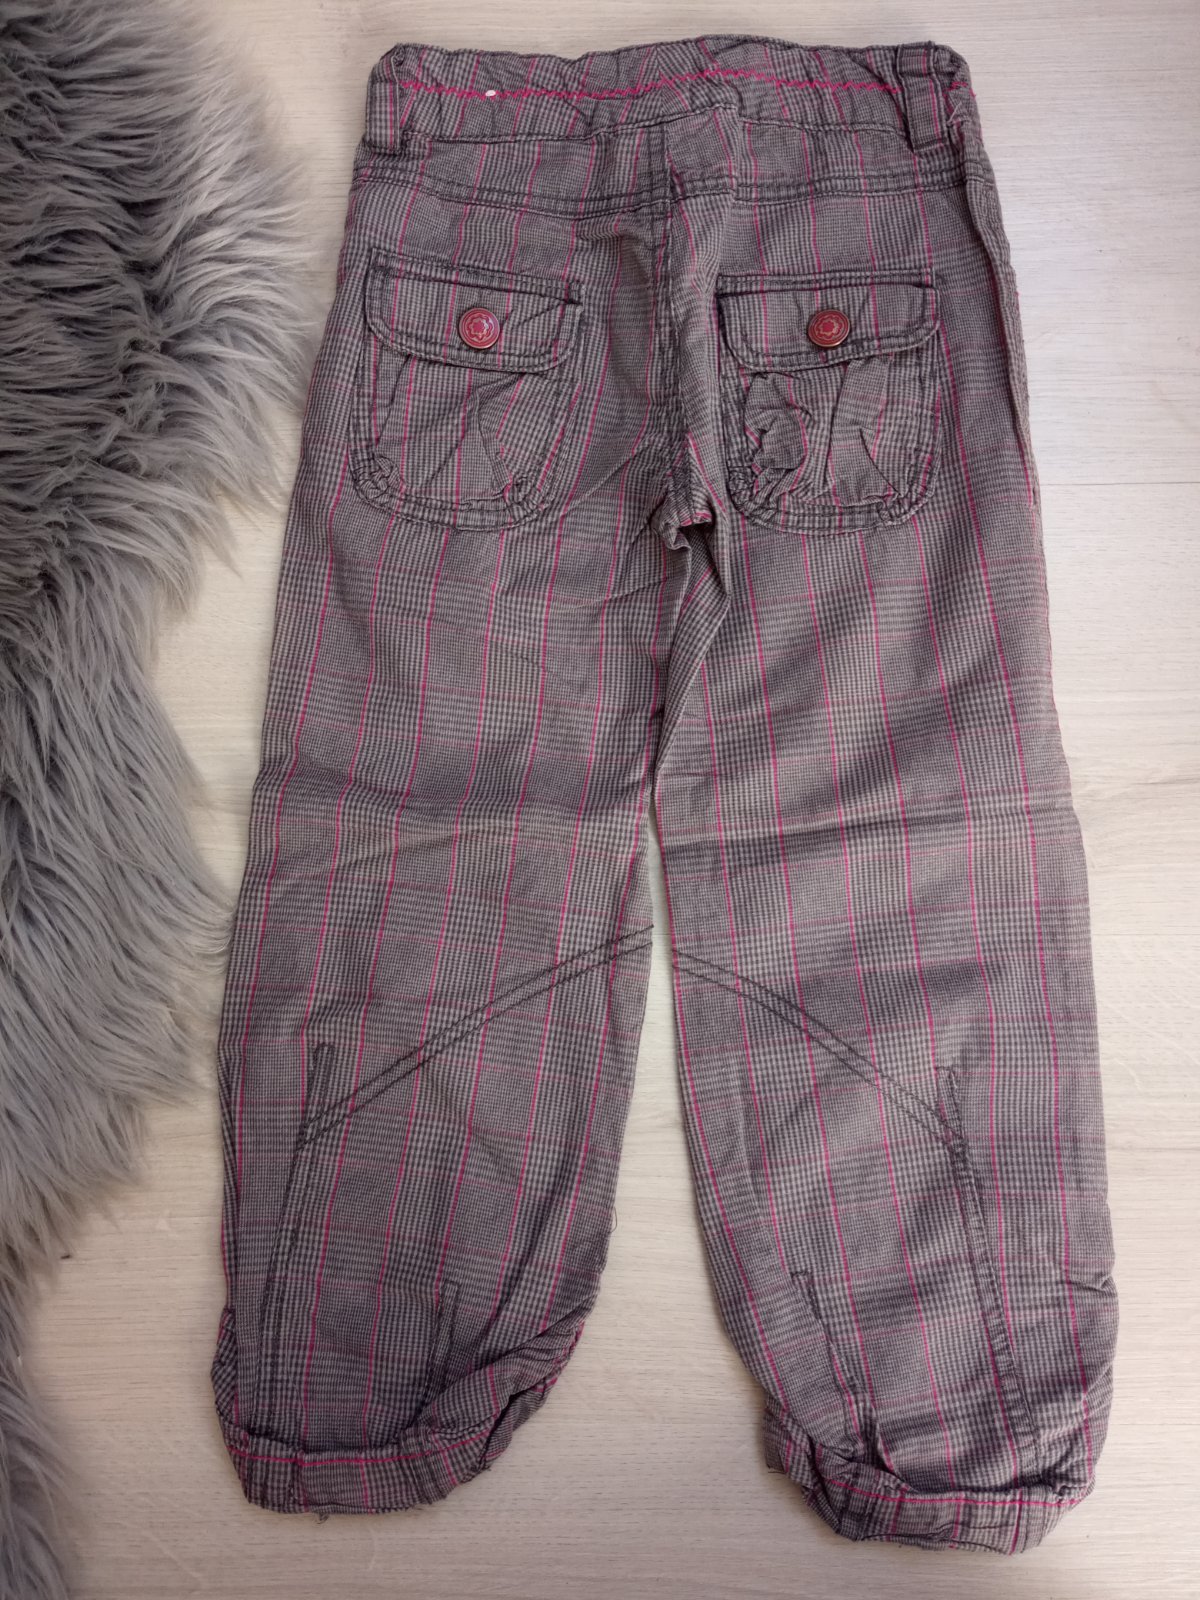 Sivo-ružové kockované nohavice Dopodopo (3-4 r.)